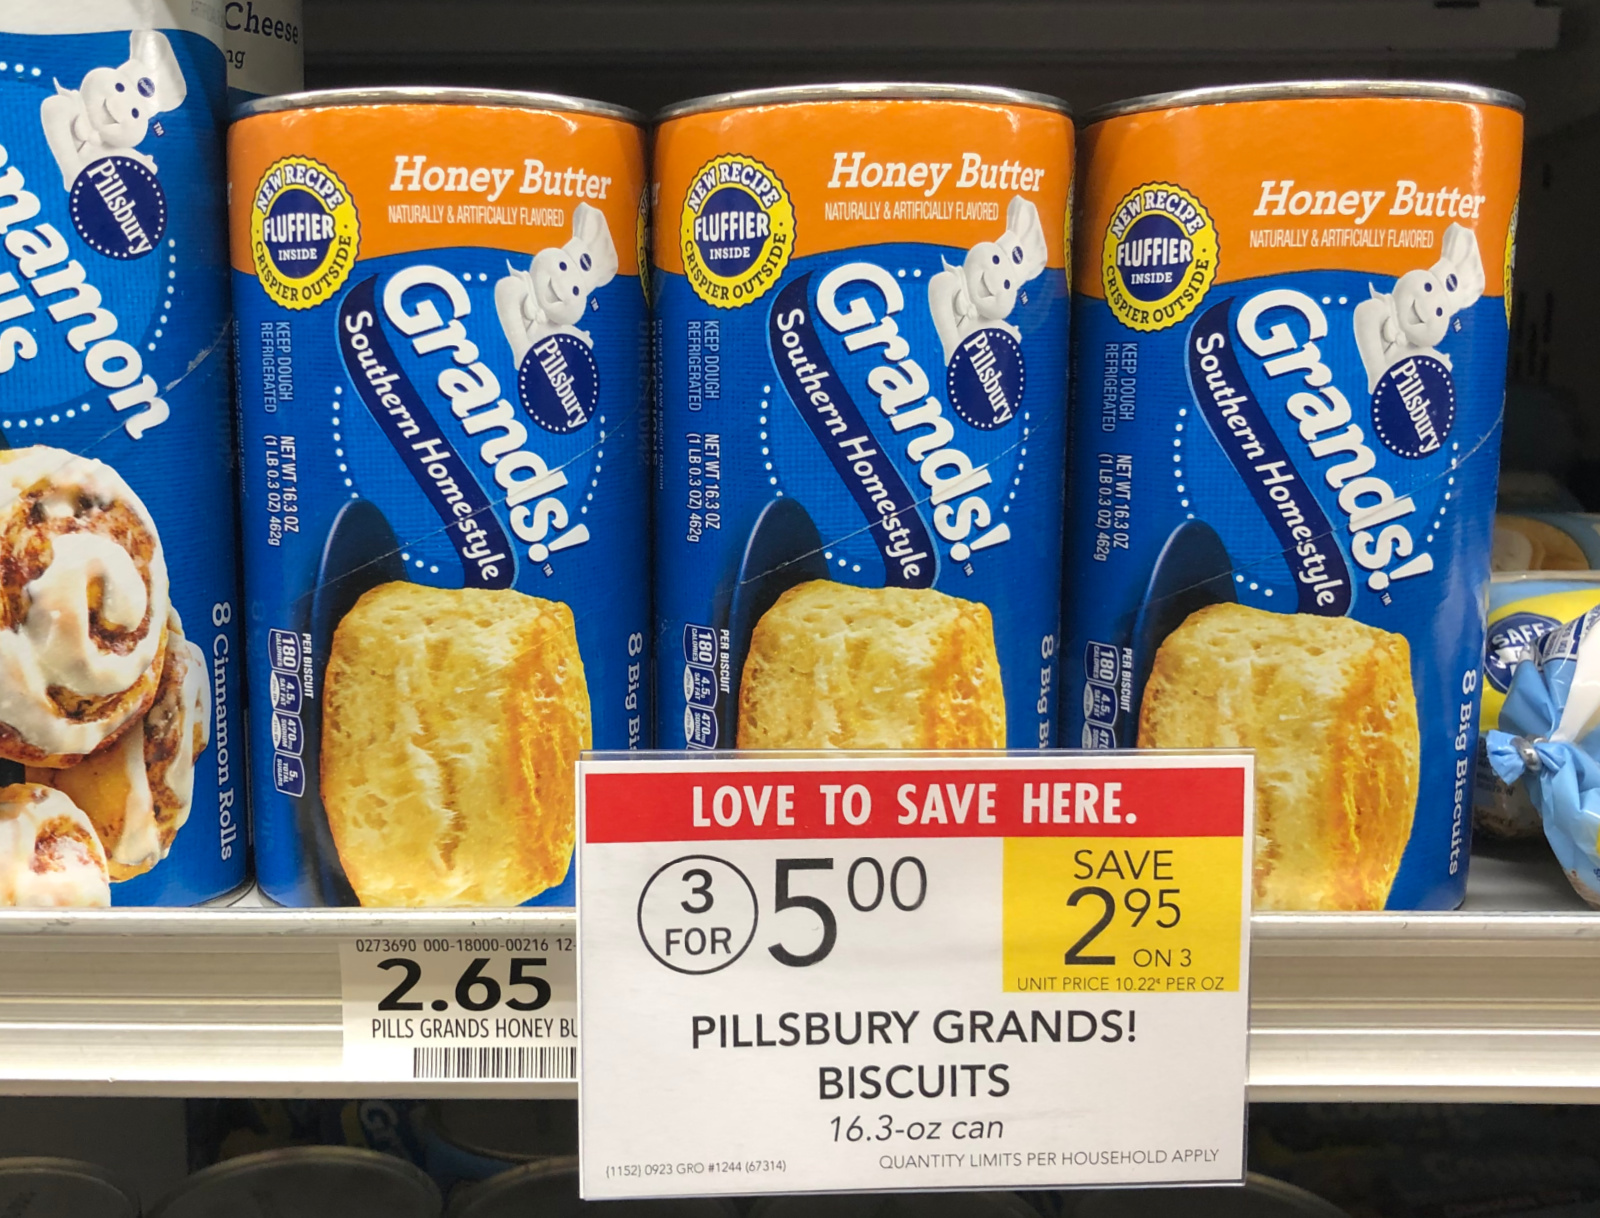 Pillsbury Grands Biscuits Just $1.33 Per Can At Publix on I Heart Publix 1